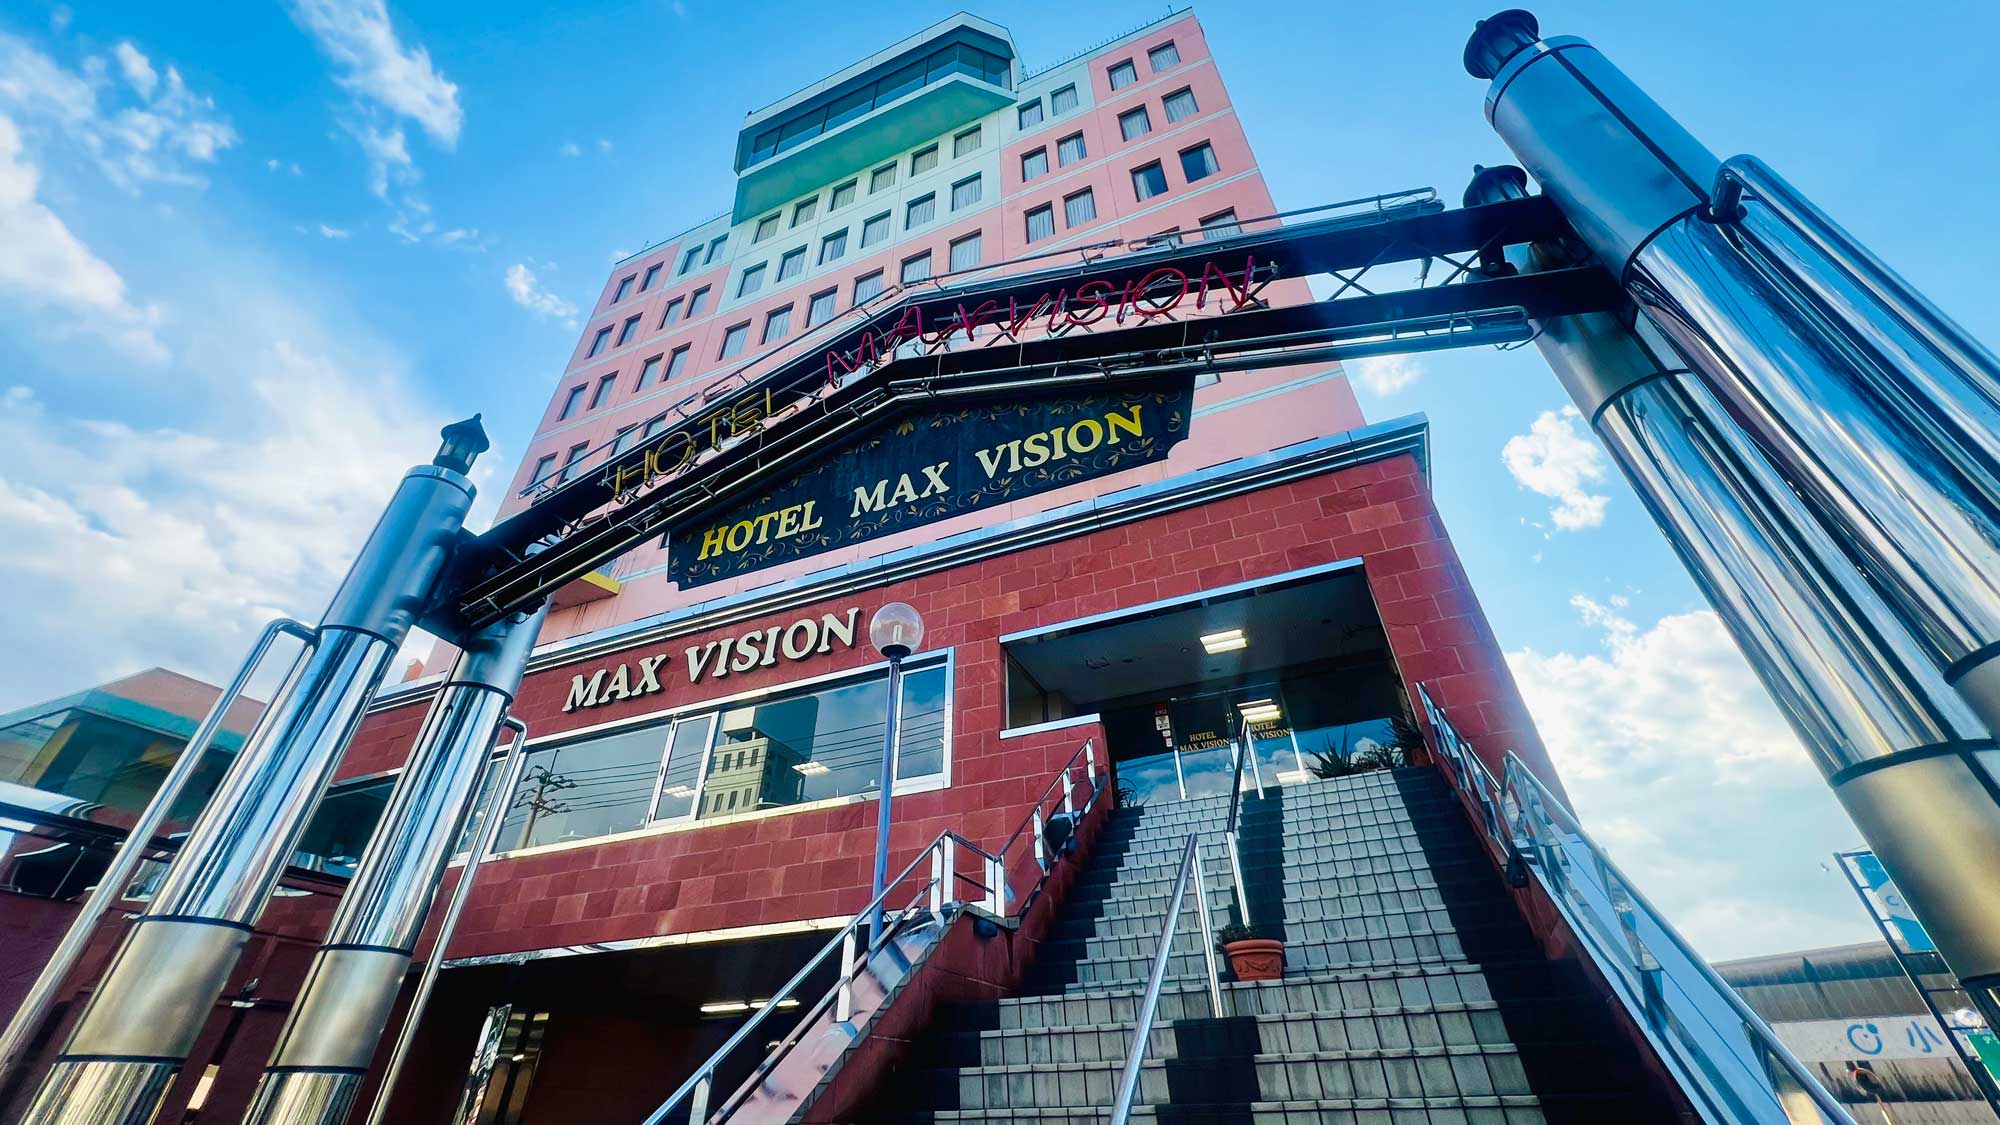 Hotel Max Vision